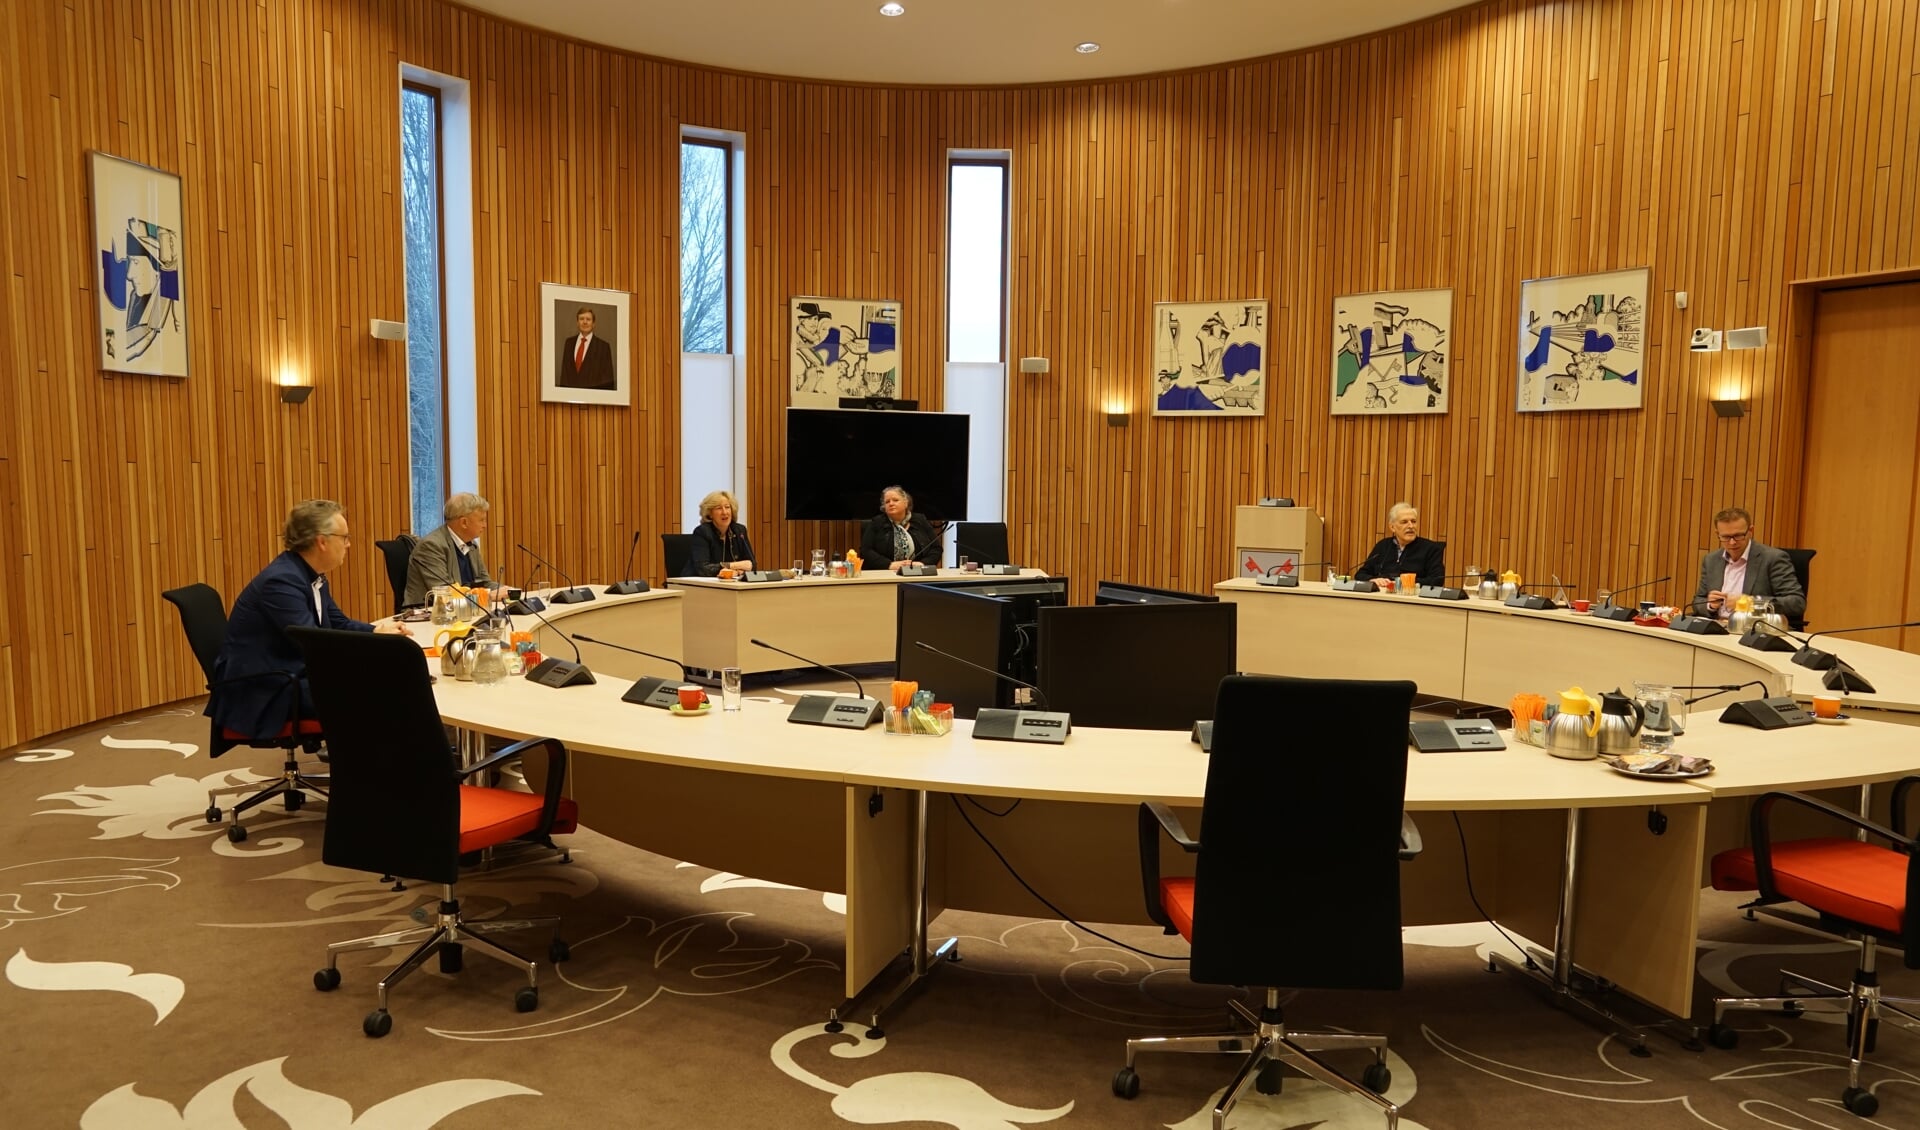 Willem Joosten, geheel links op de foto, was vorige week vrijdag nog vice-voorzitter van het centraal stembureau tijdens de openbare zitting waarop de kandidatenlijsten voor de gemeenteraadsverkiezingen werden vastgesteld. 